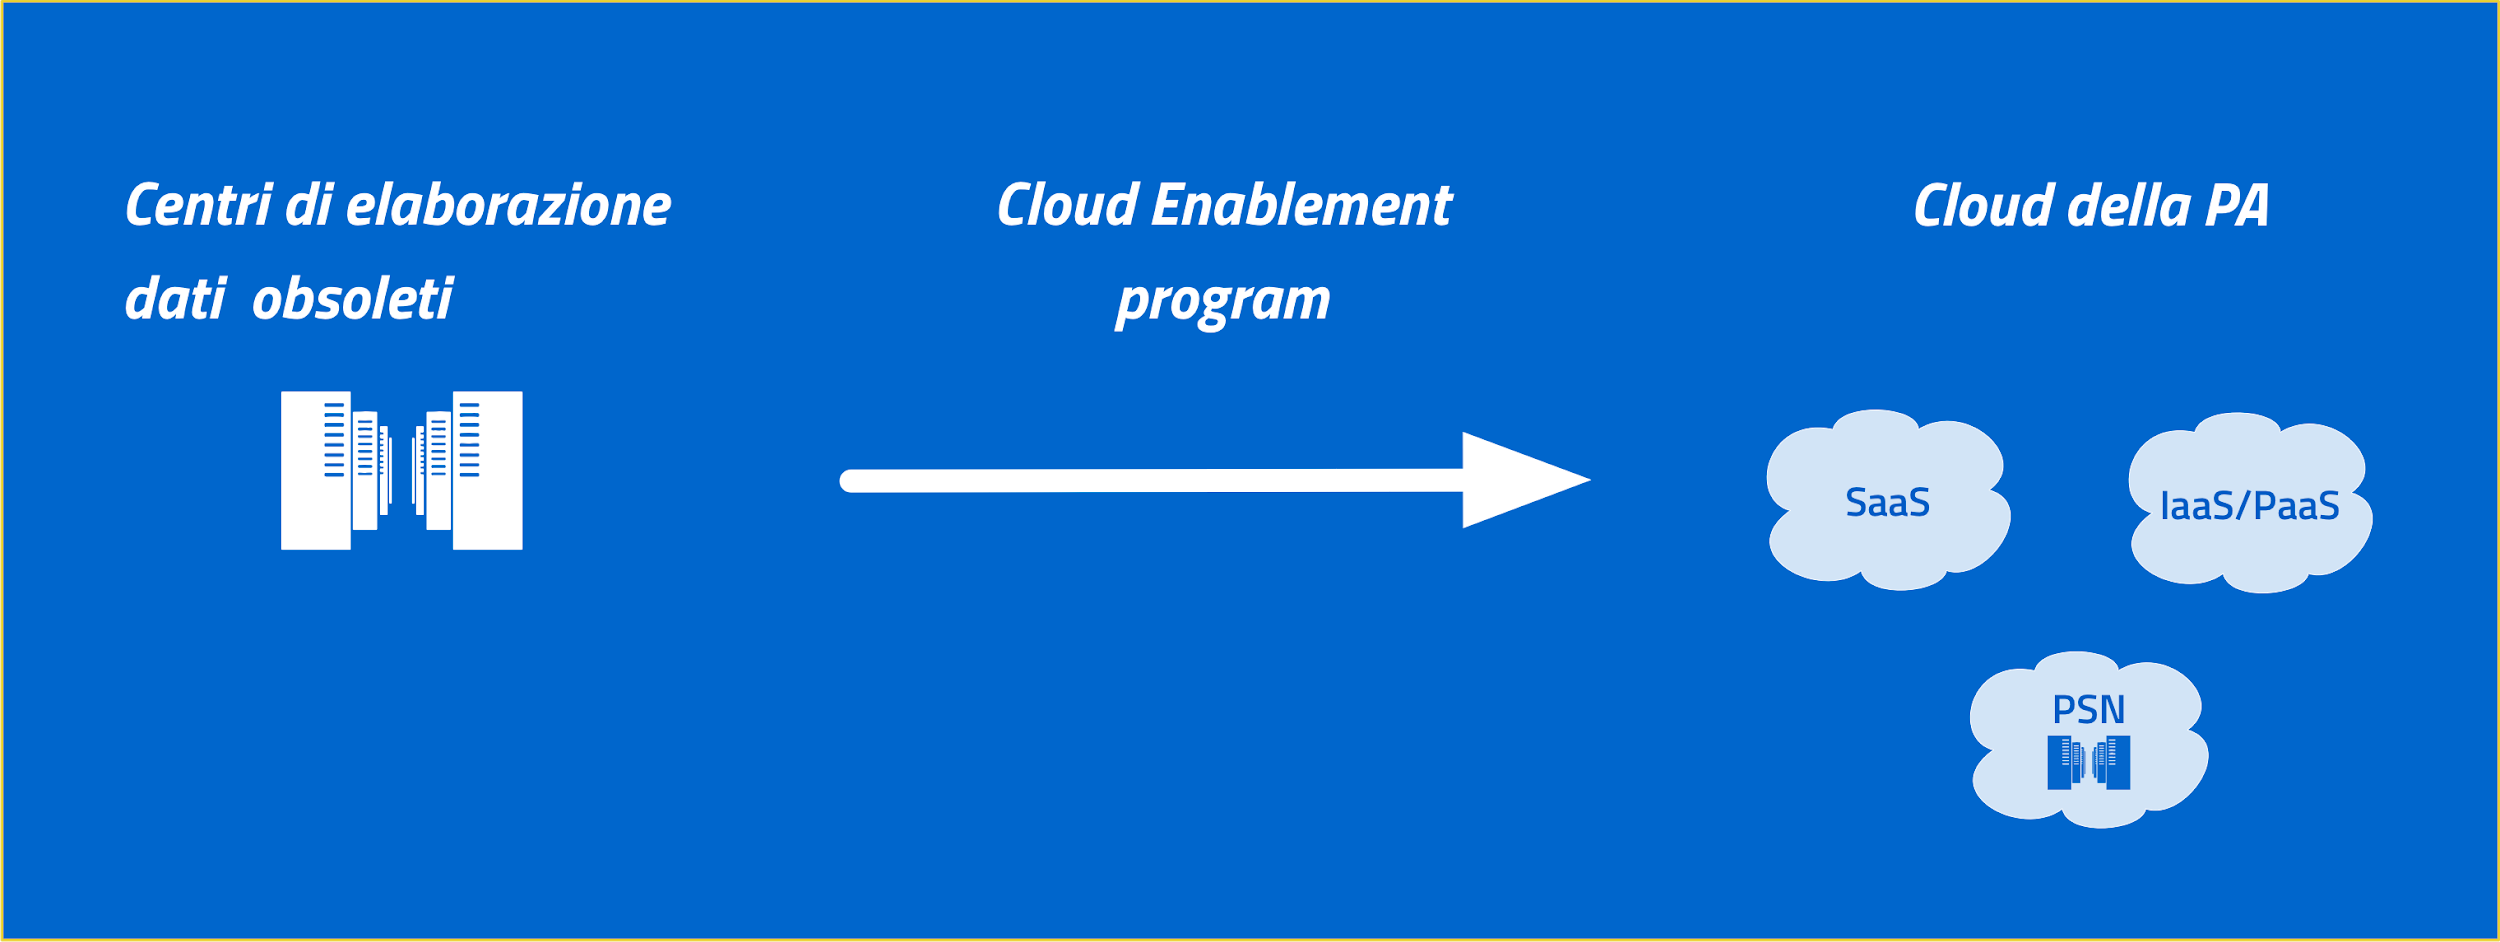 Un'immagine che mostra il passaggio dai centri di elaborazione dati obsoleti al cloud della PA attraverso il Cloud Enablement program.